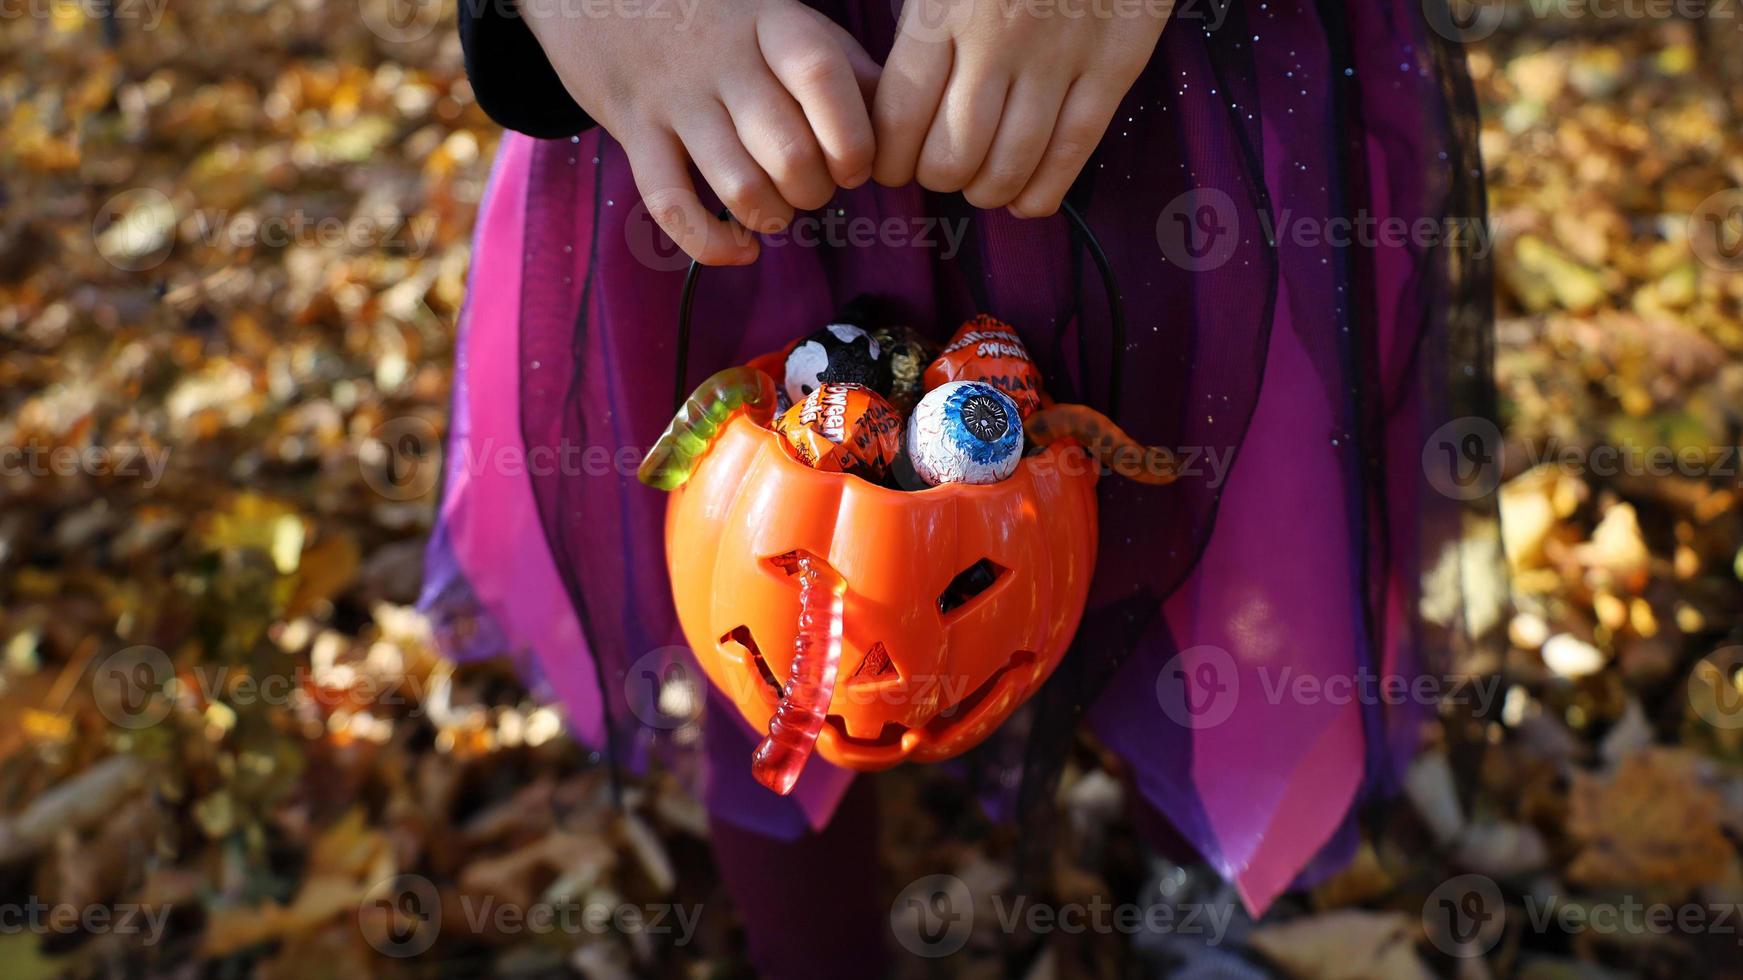 garota de vestido violeta de bruxa tem nas mãos balde de plástico de abóbora laranja com doces e vermes de geleia. floresta de outono para trás. conceito de doces ou travessuras de halloween. sem rosto, irreconhecível, foco seletivo. foto